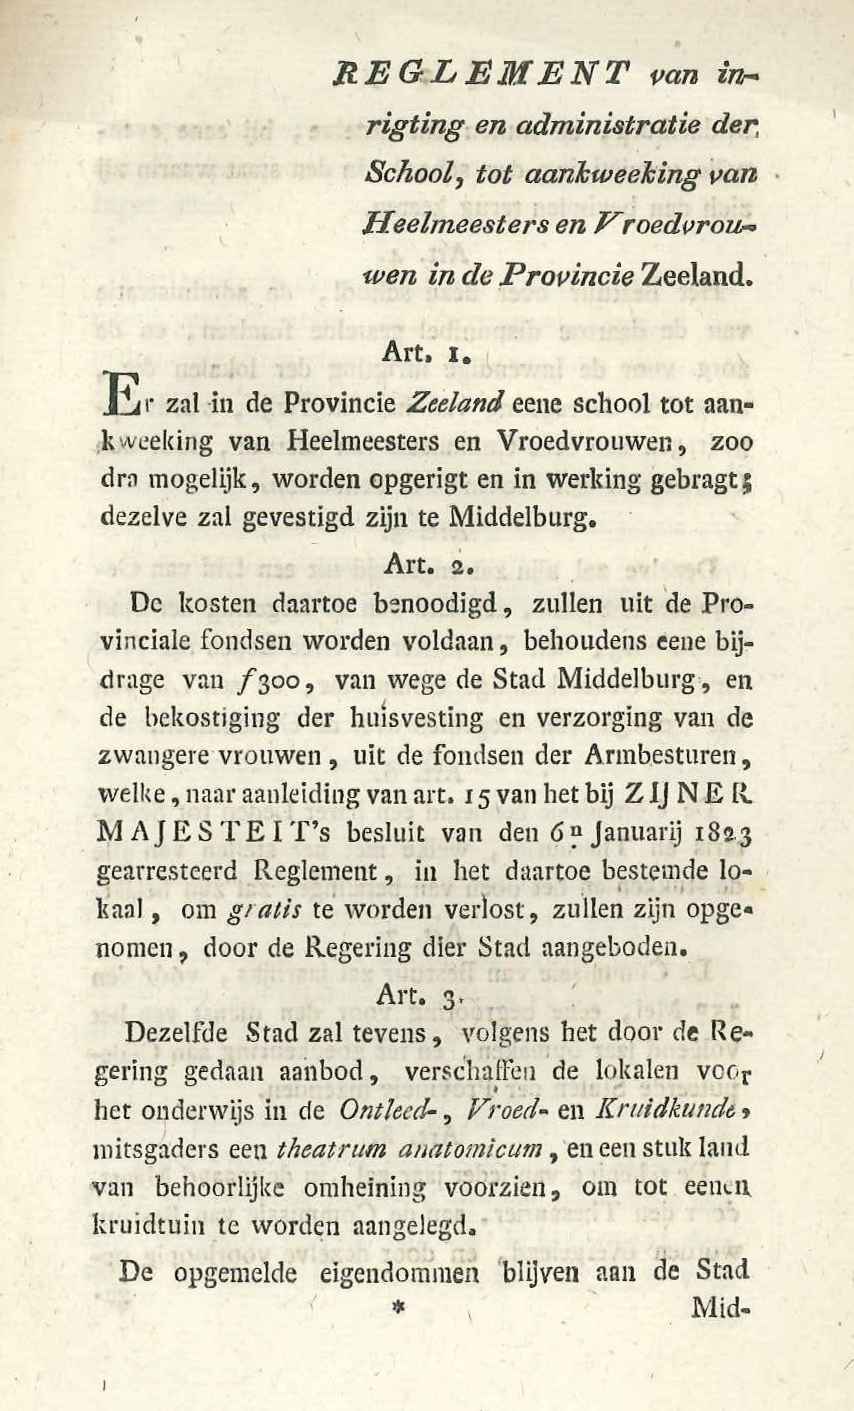 Reglement op de provinciale school van heelmeesters en vroedvrouwen, 1824. GAG.ASG.inv.nr. 1985.